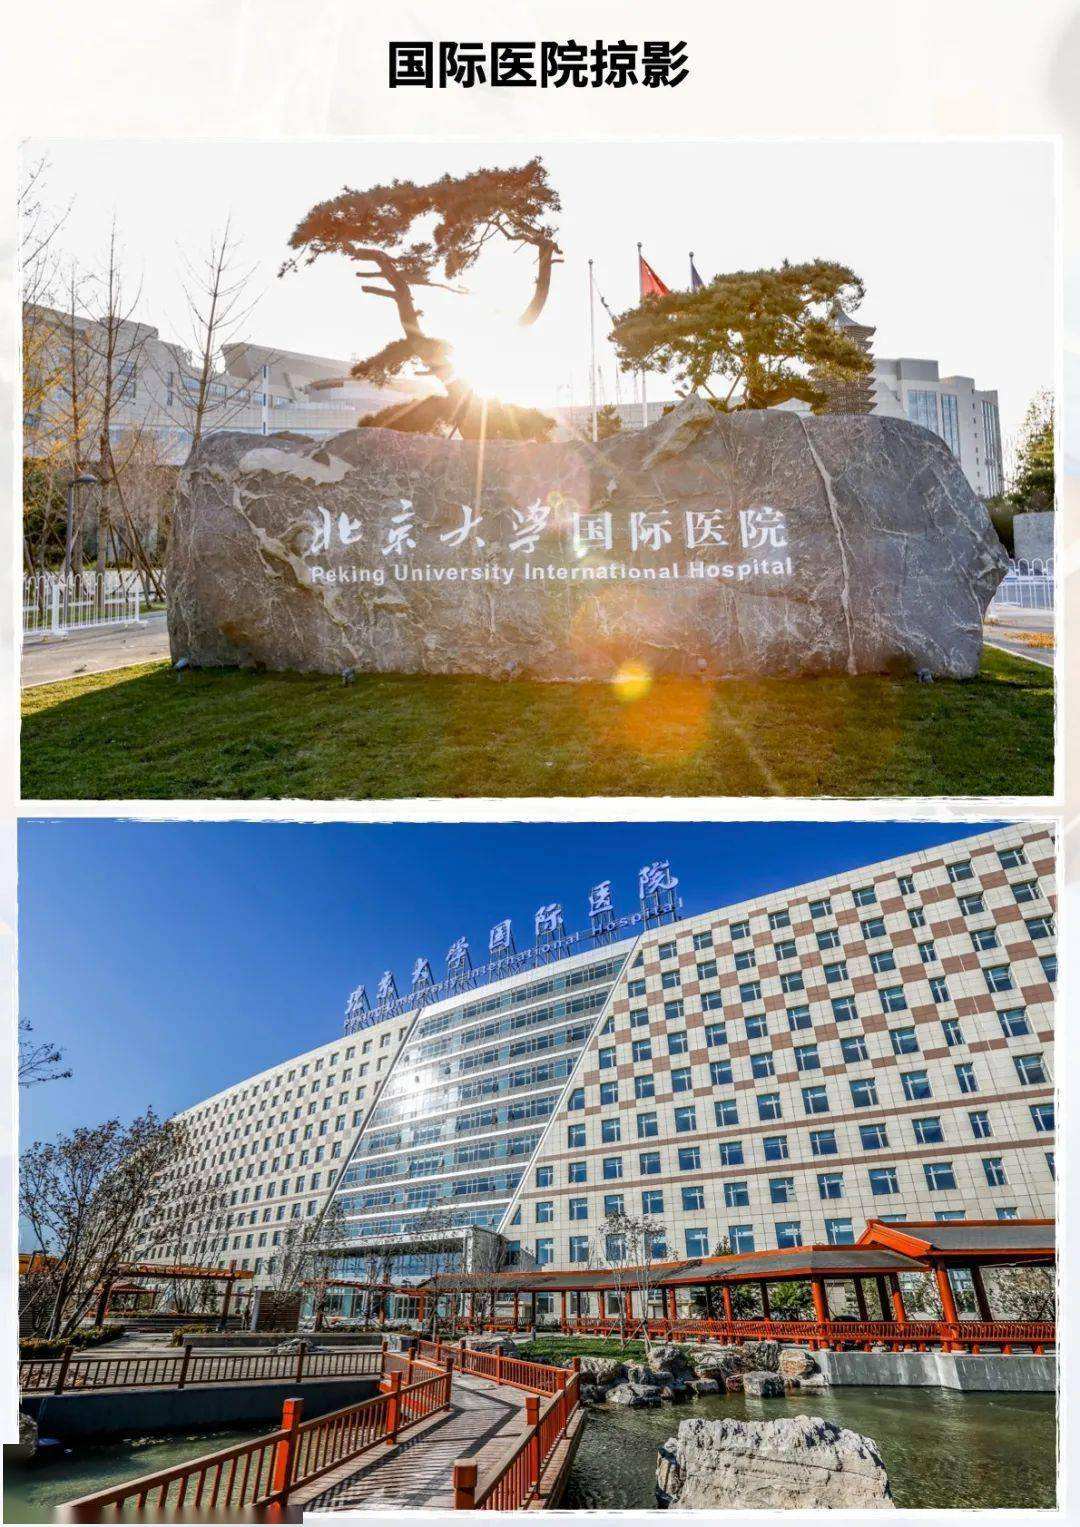 关于北京大学首钢医院挂号号贩子联系方式专业代运作住院联系方式性价比最高的信息